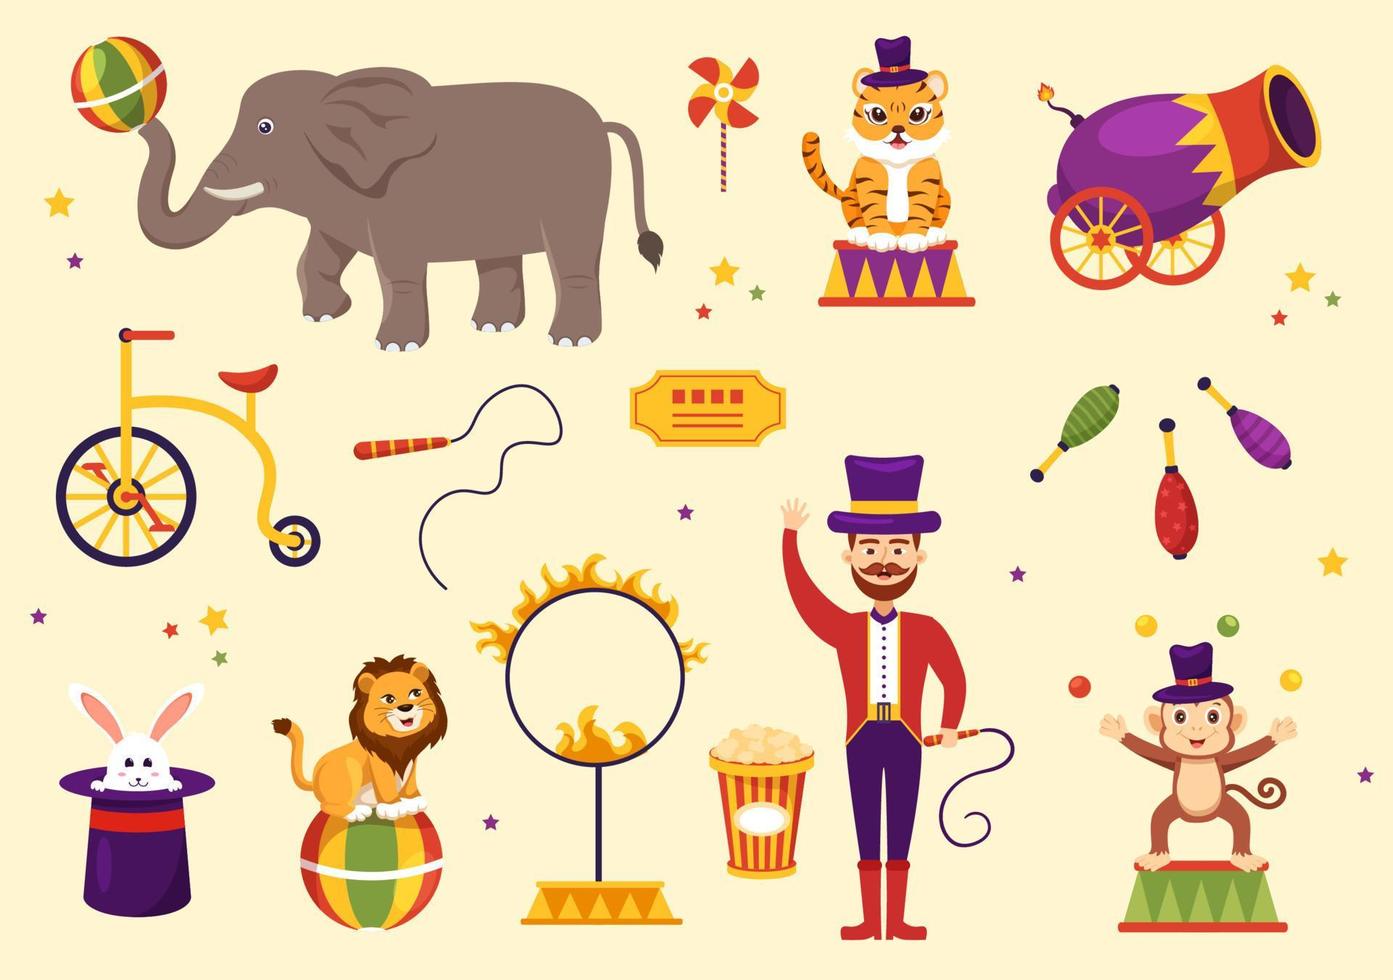 plantilla de circo dibujada a mano ilustración plana de dibujos animados con espectáculo de gimnasta, mago, león animal, anfitrión, animador, payasos y parque de atracciones vector